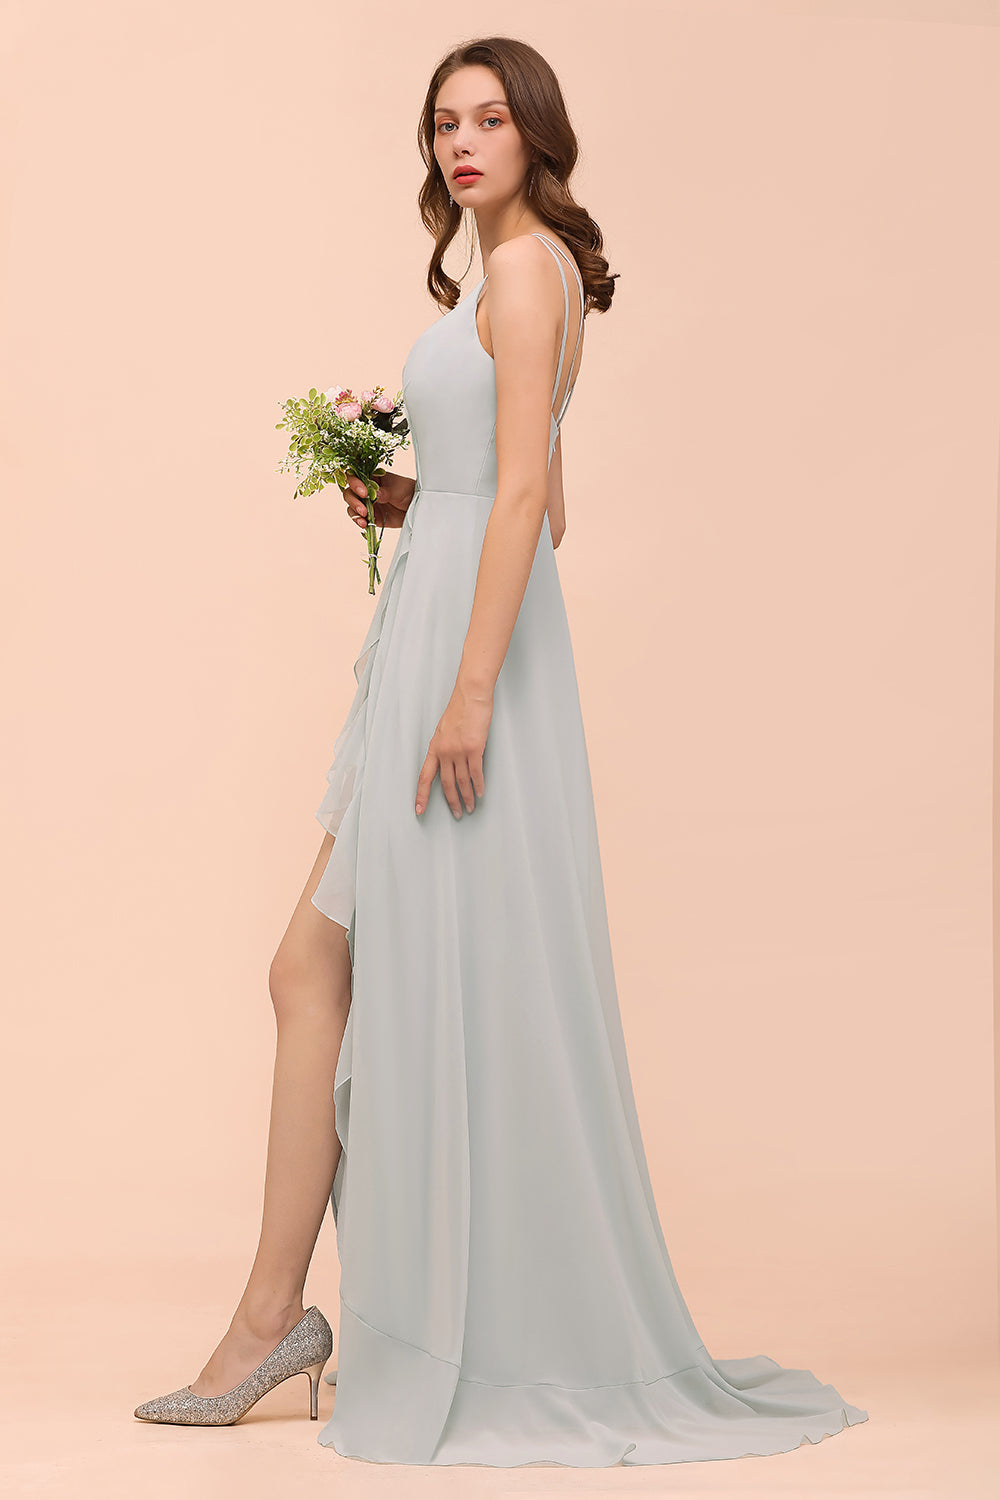 Finden Sie Brautjungfernkleider Lang Mint Grün online bei babyonlinedress.de. Hochzeitspartykleider Günstig Online für Sie zur Hochzeit gehen.